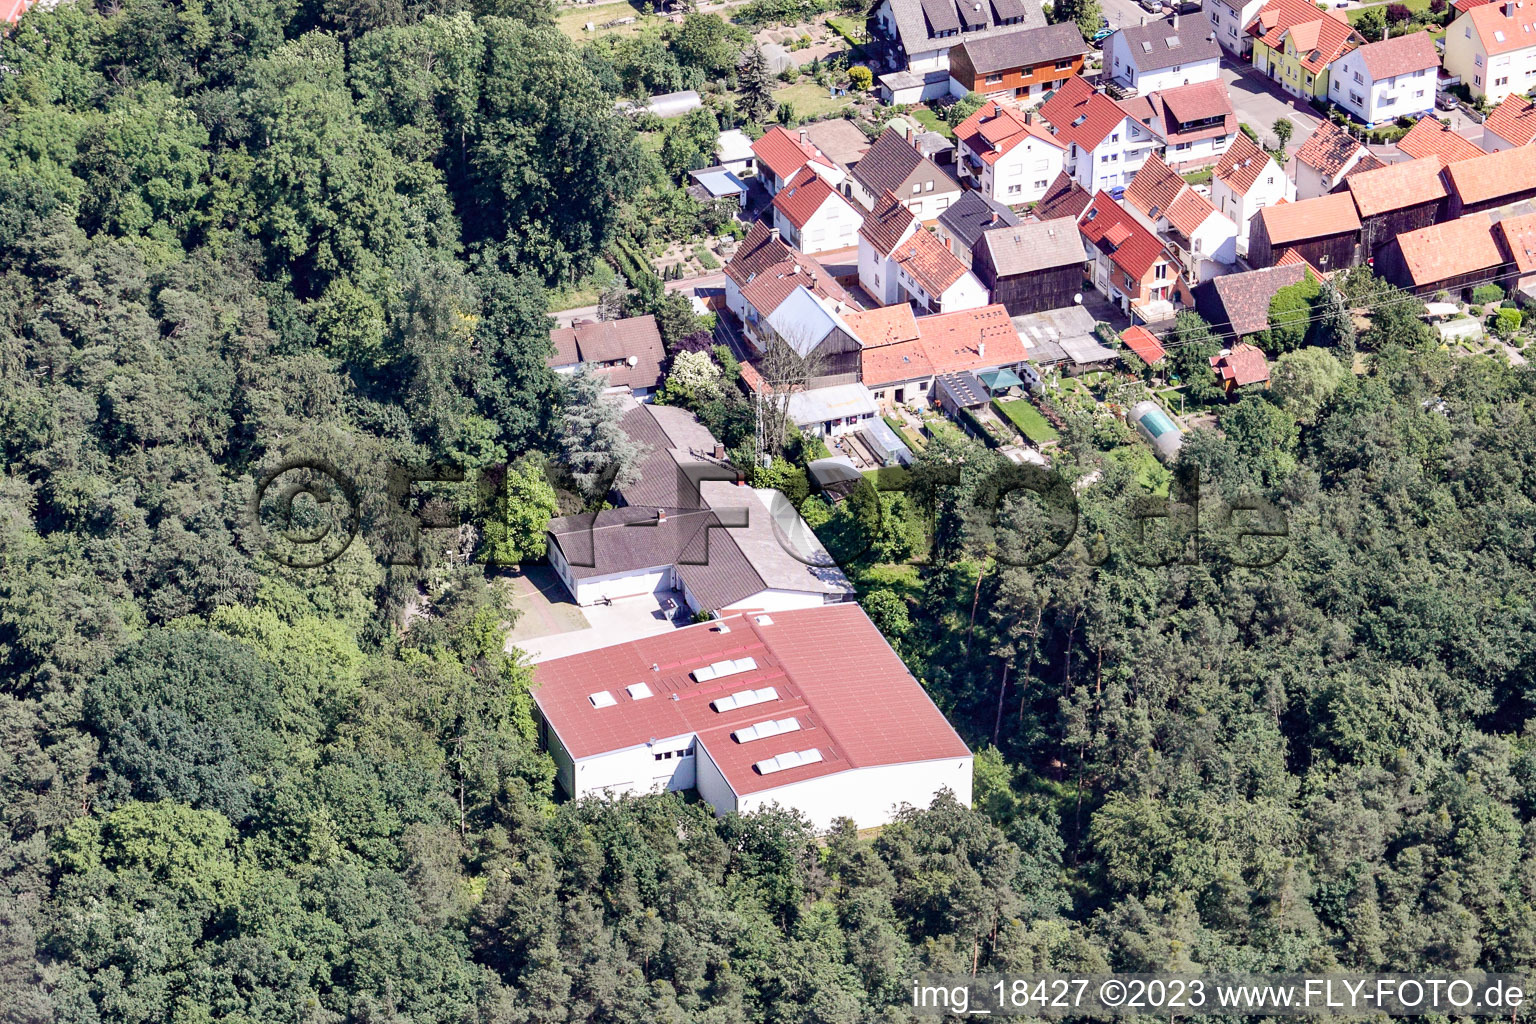 Hatzenbühl im Bundesland Rheinland-Pfalz, Deutschland von der Drohne aus gesehen